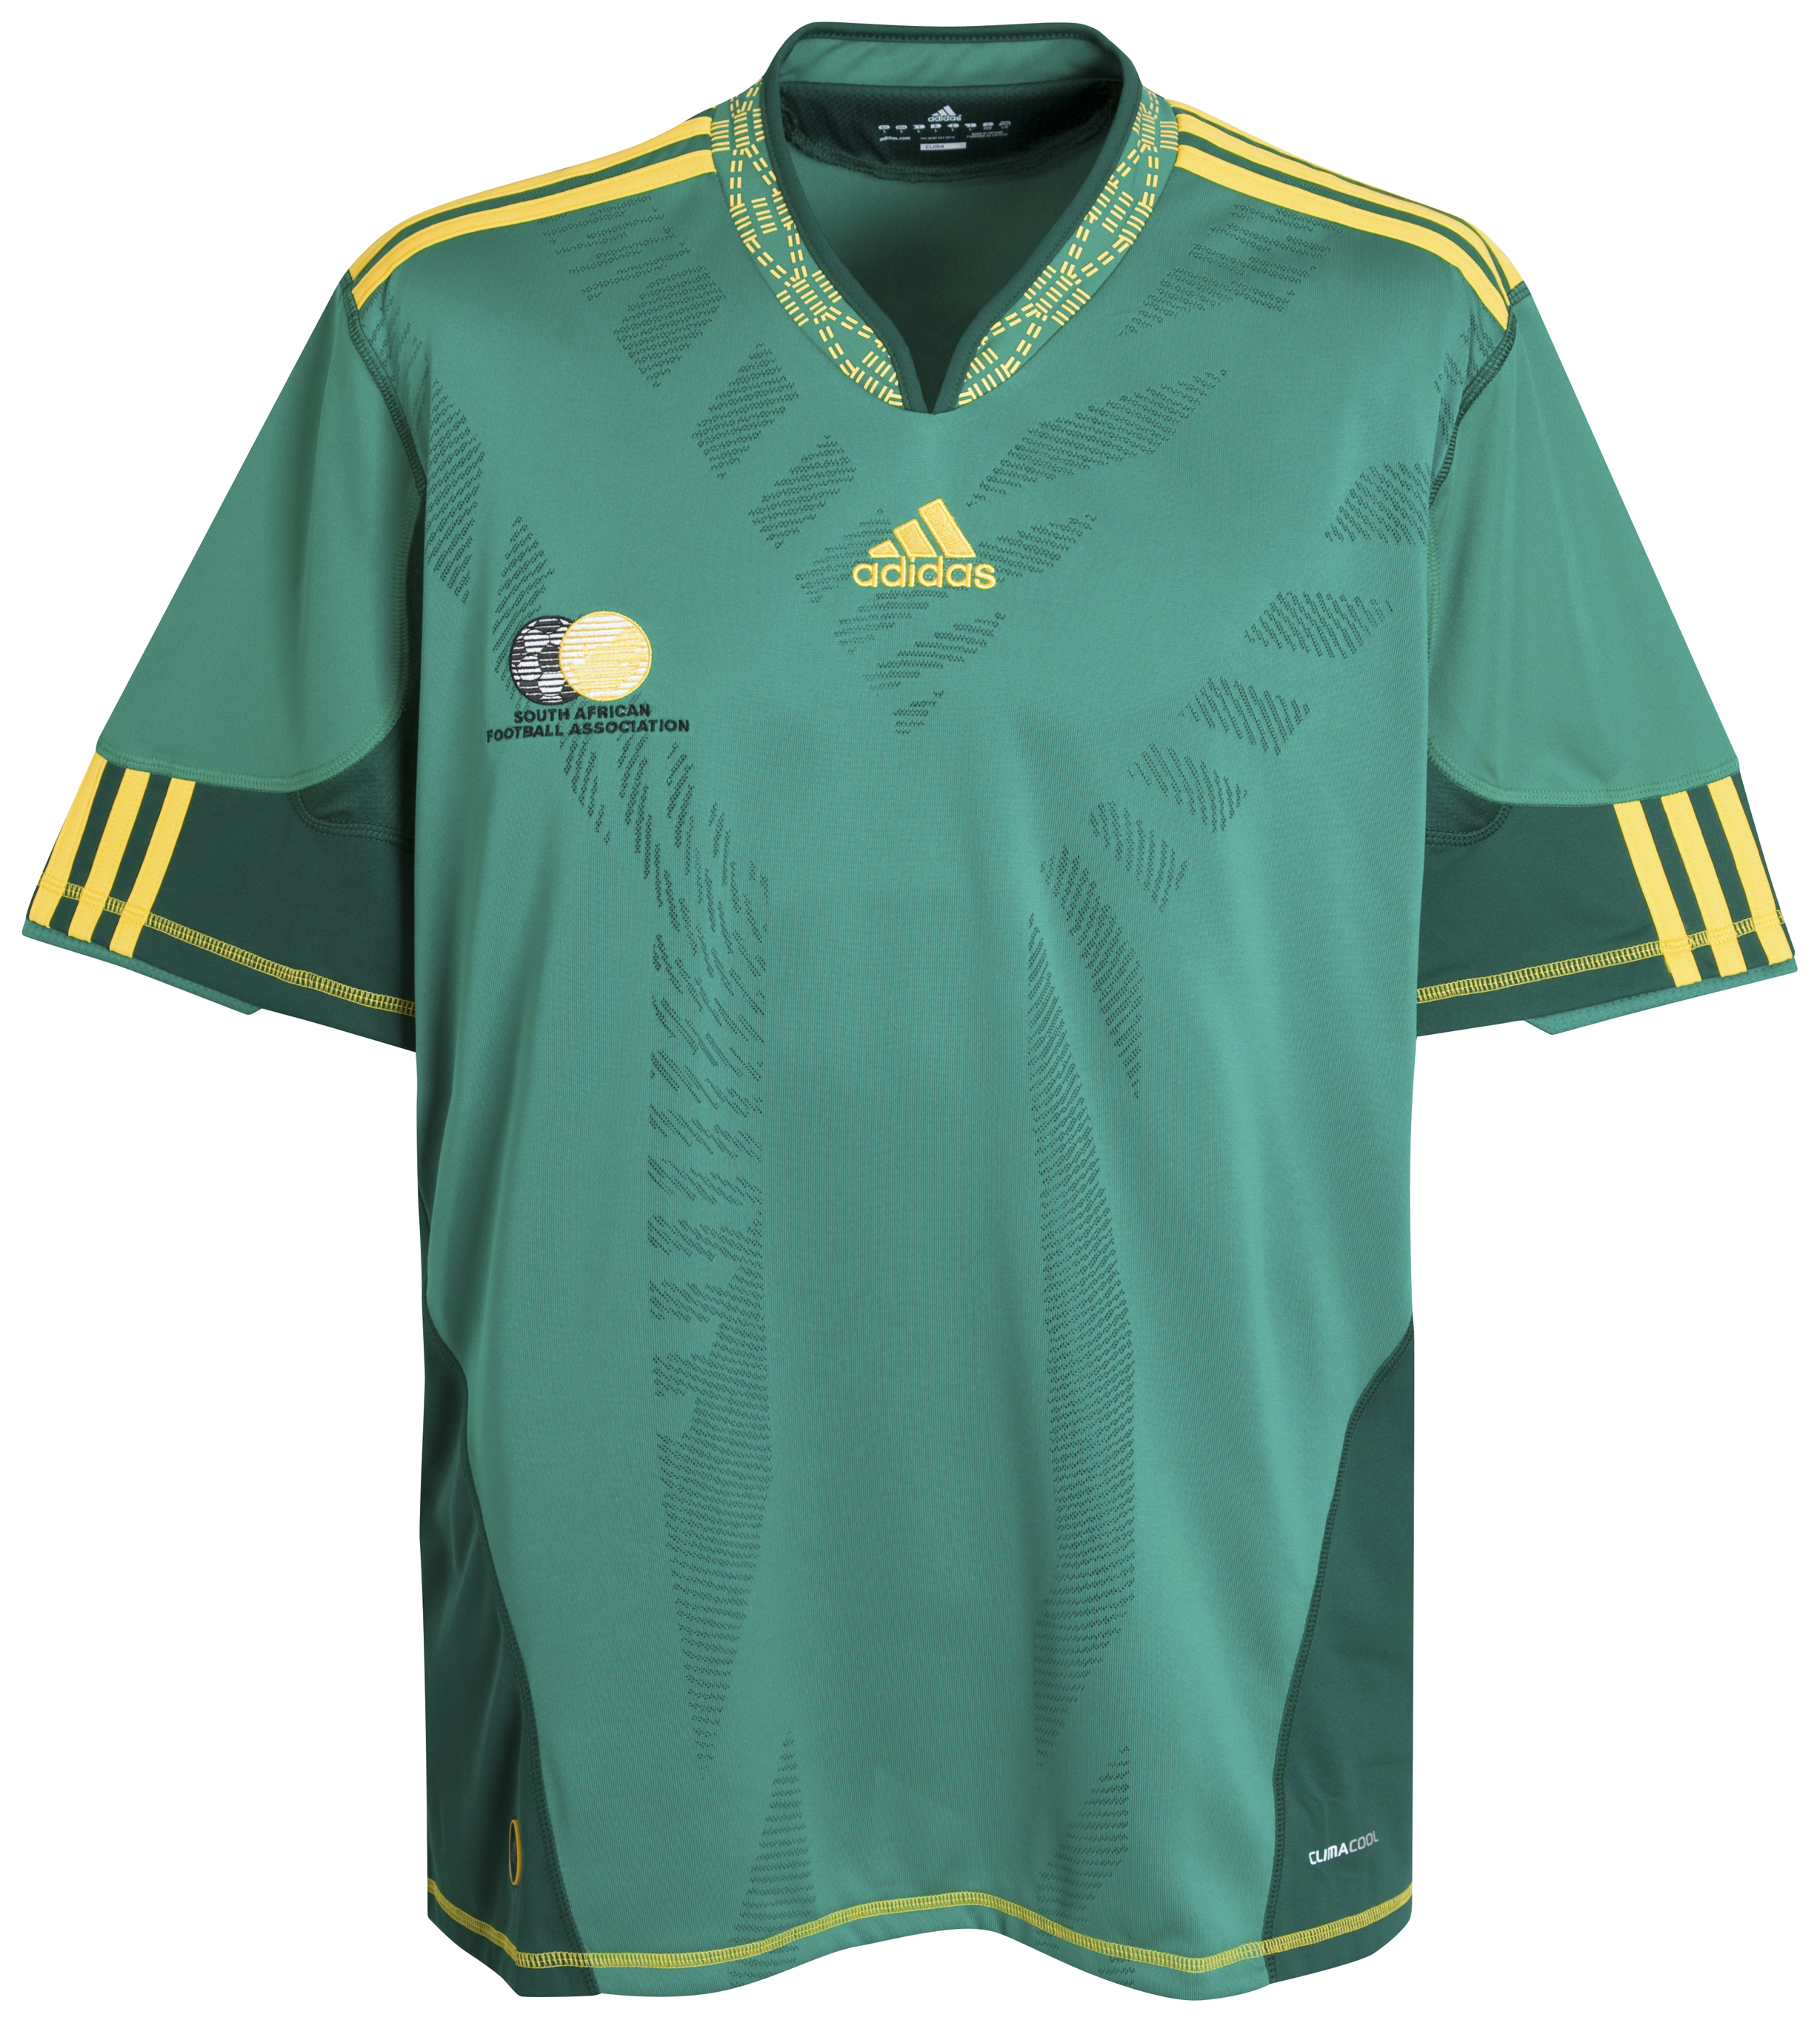 الملابس النهائيه لكأس العالم (2010)بجنوب افريقيا Kb-66945